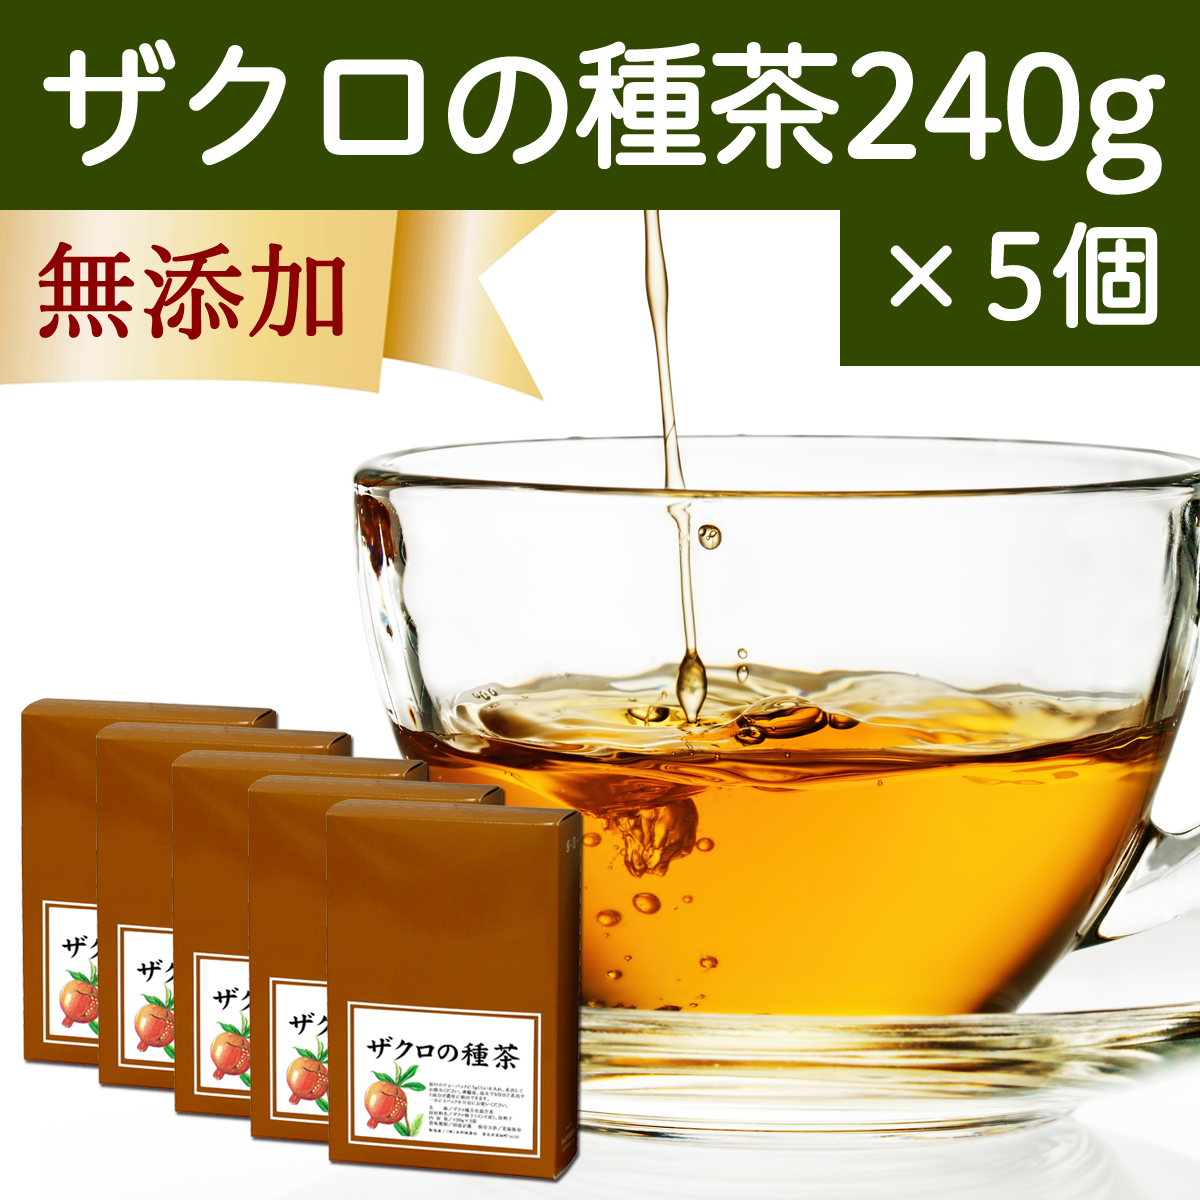 自然健康社 自然健康社 ザクロの種茶 240g × 5個 健康茶の商品画像